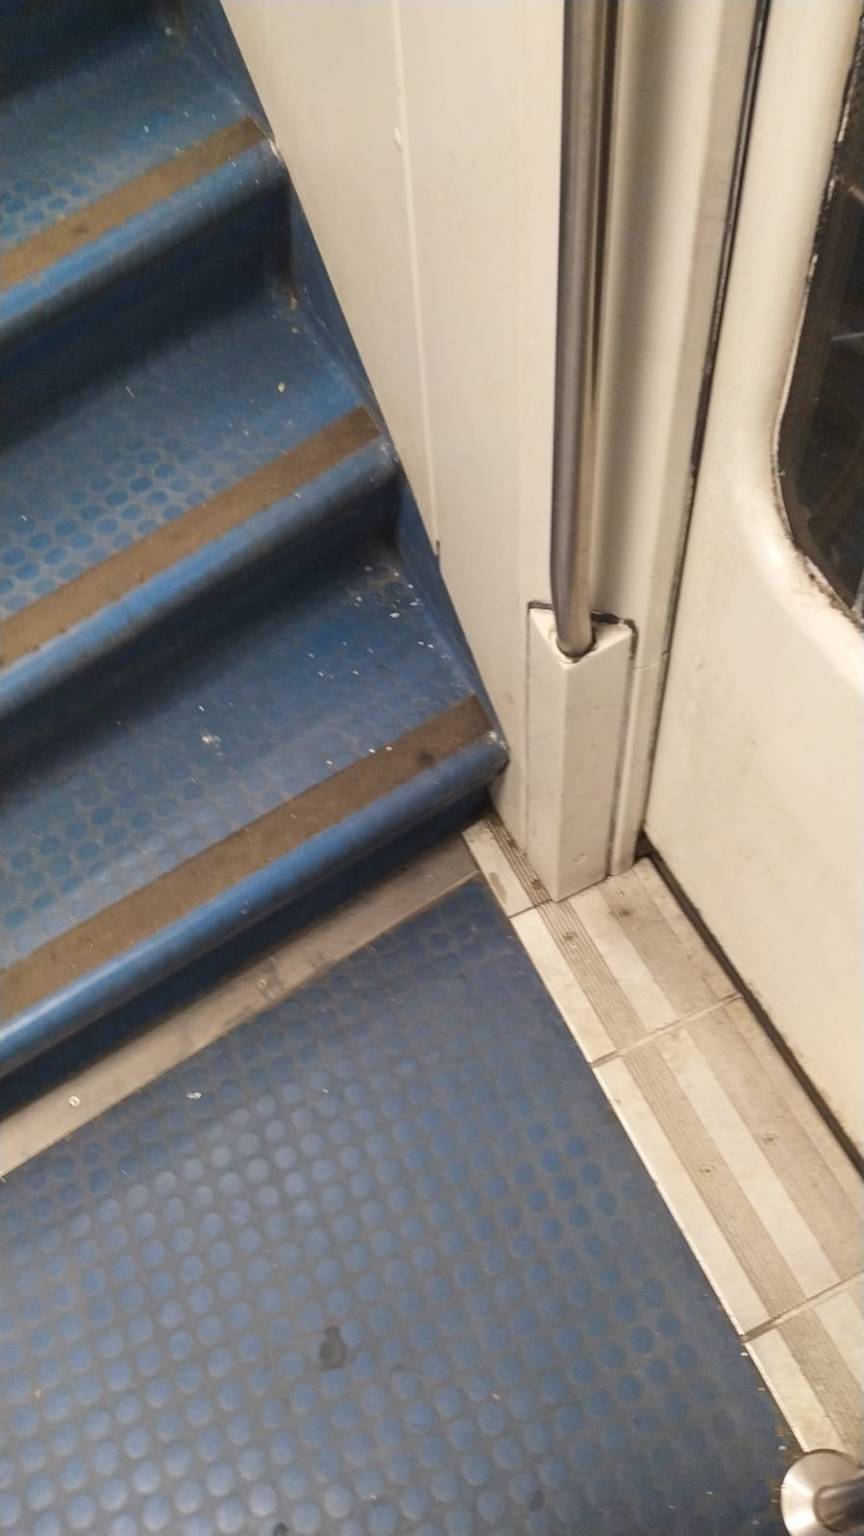 Manca la pulizia sui treni, la denuncia sui social: "Meglio non sedersi. È indecoroso"